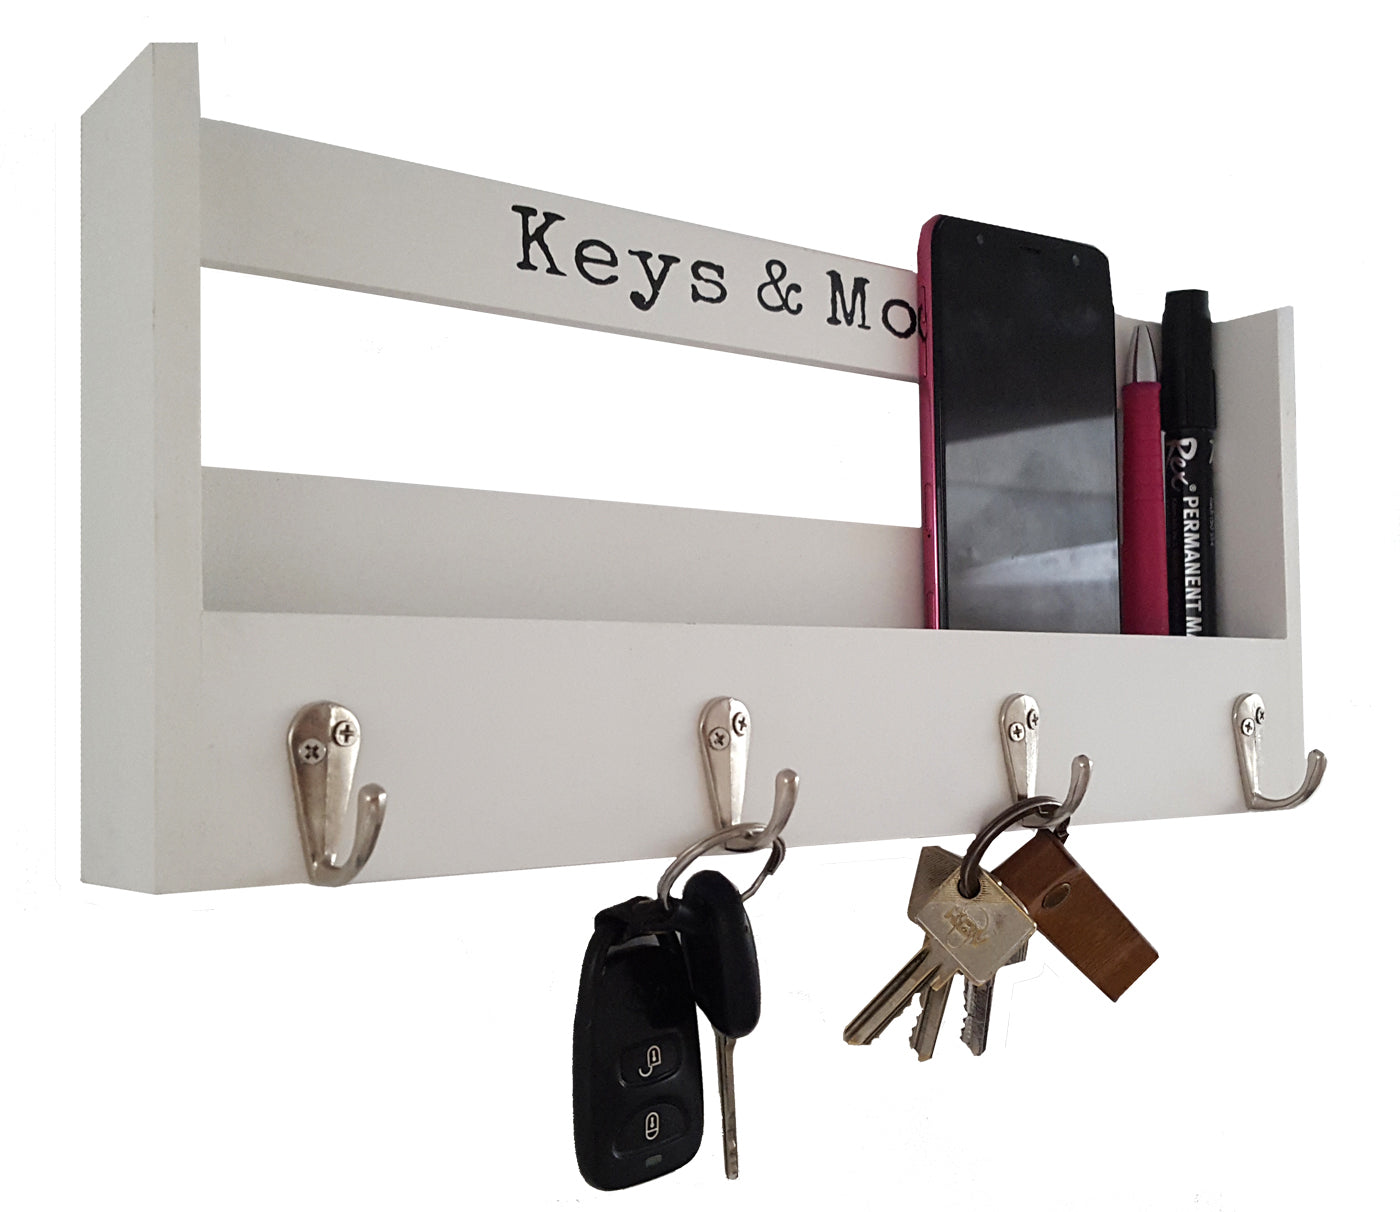 LB H&F Schlüsselkasten Schlüsselschrank Schlüsselbrett mit Ablage Vintage und 4 Schlüsselhaken weiß Holz für Briefe, Stifte, Handy